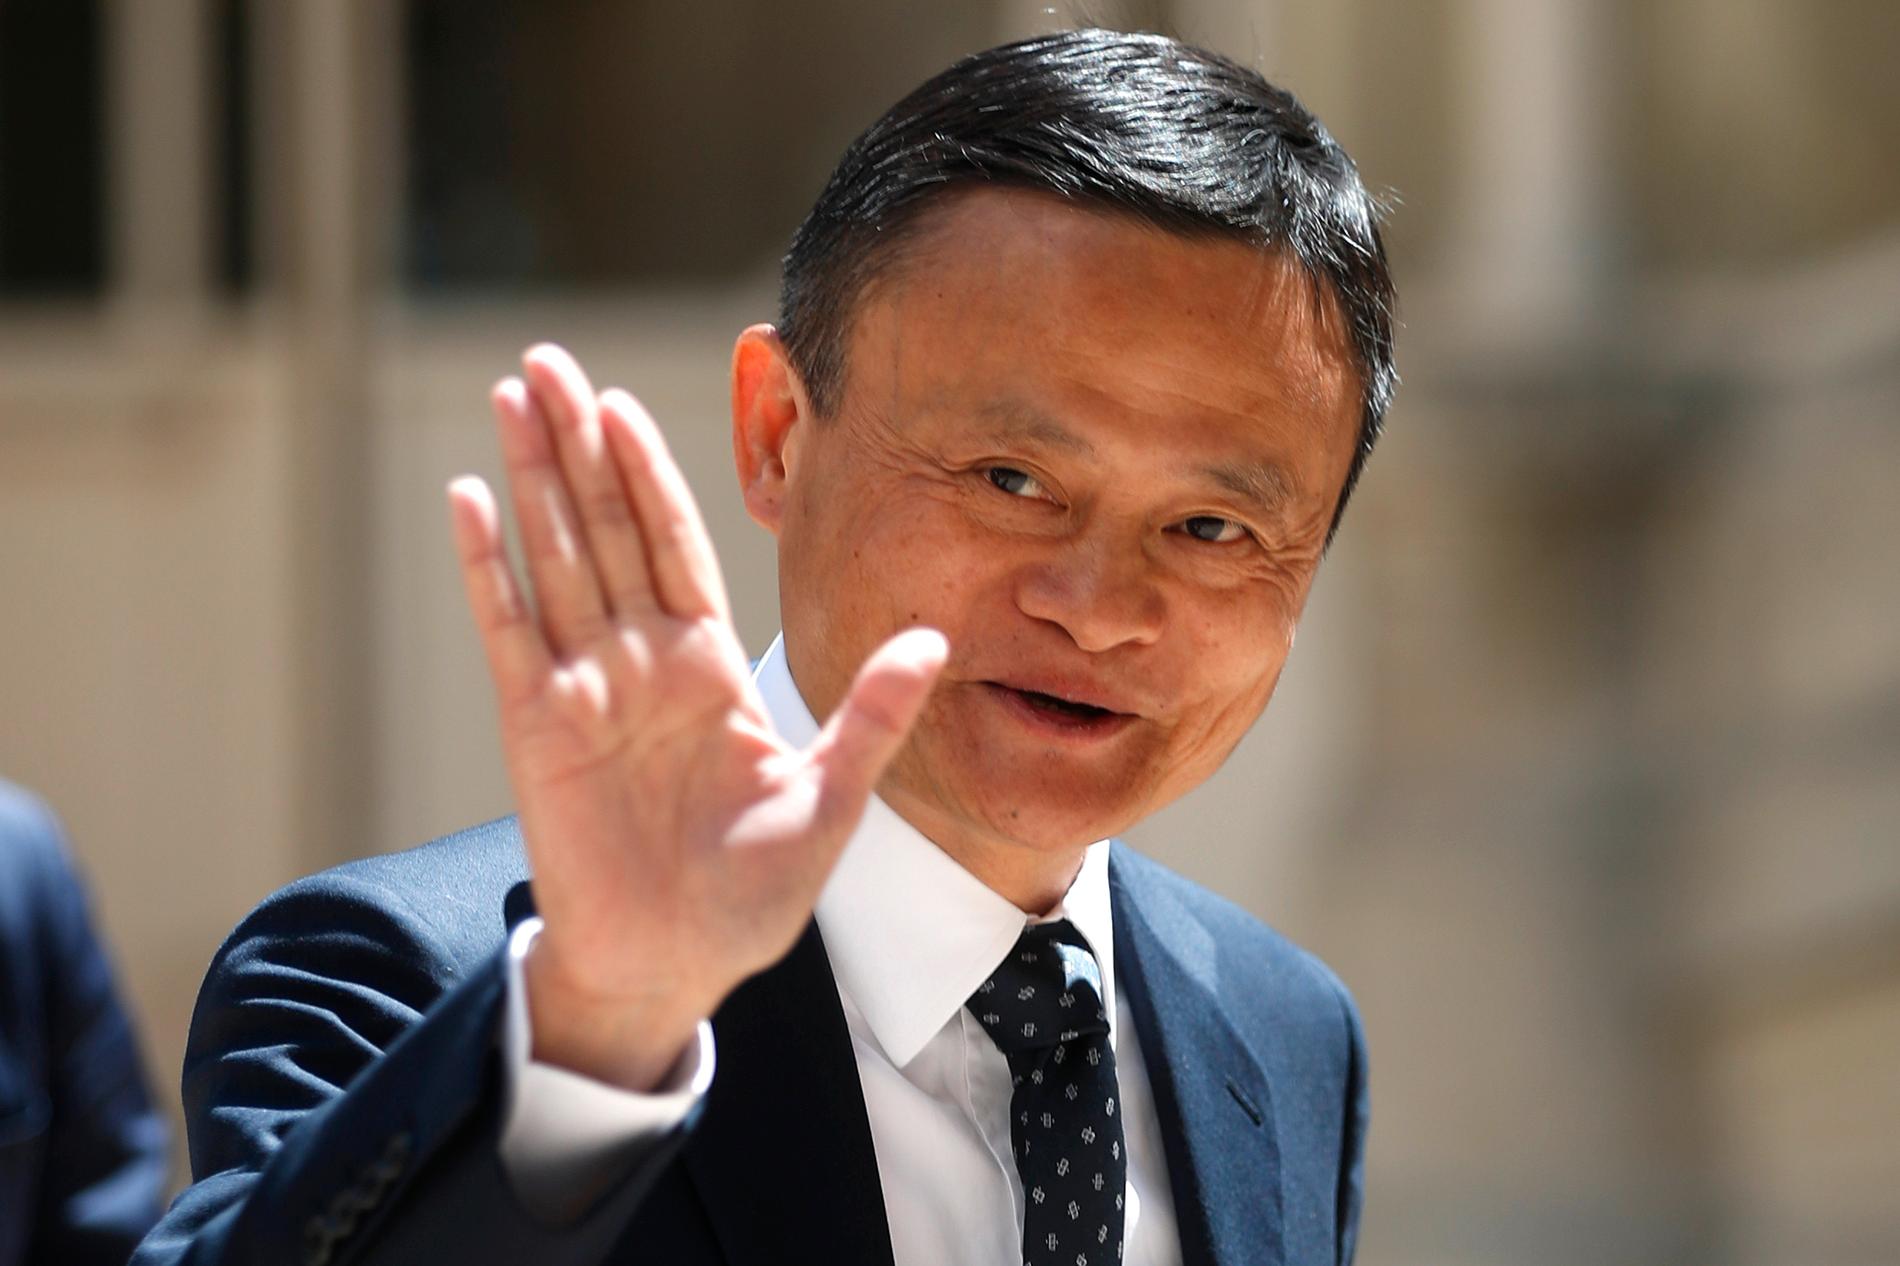 Hada Alibabagrundaren lyckats reta upp kommunistpartiet